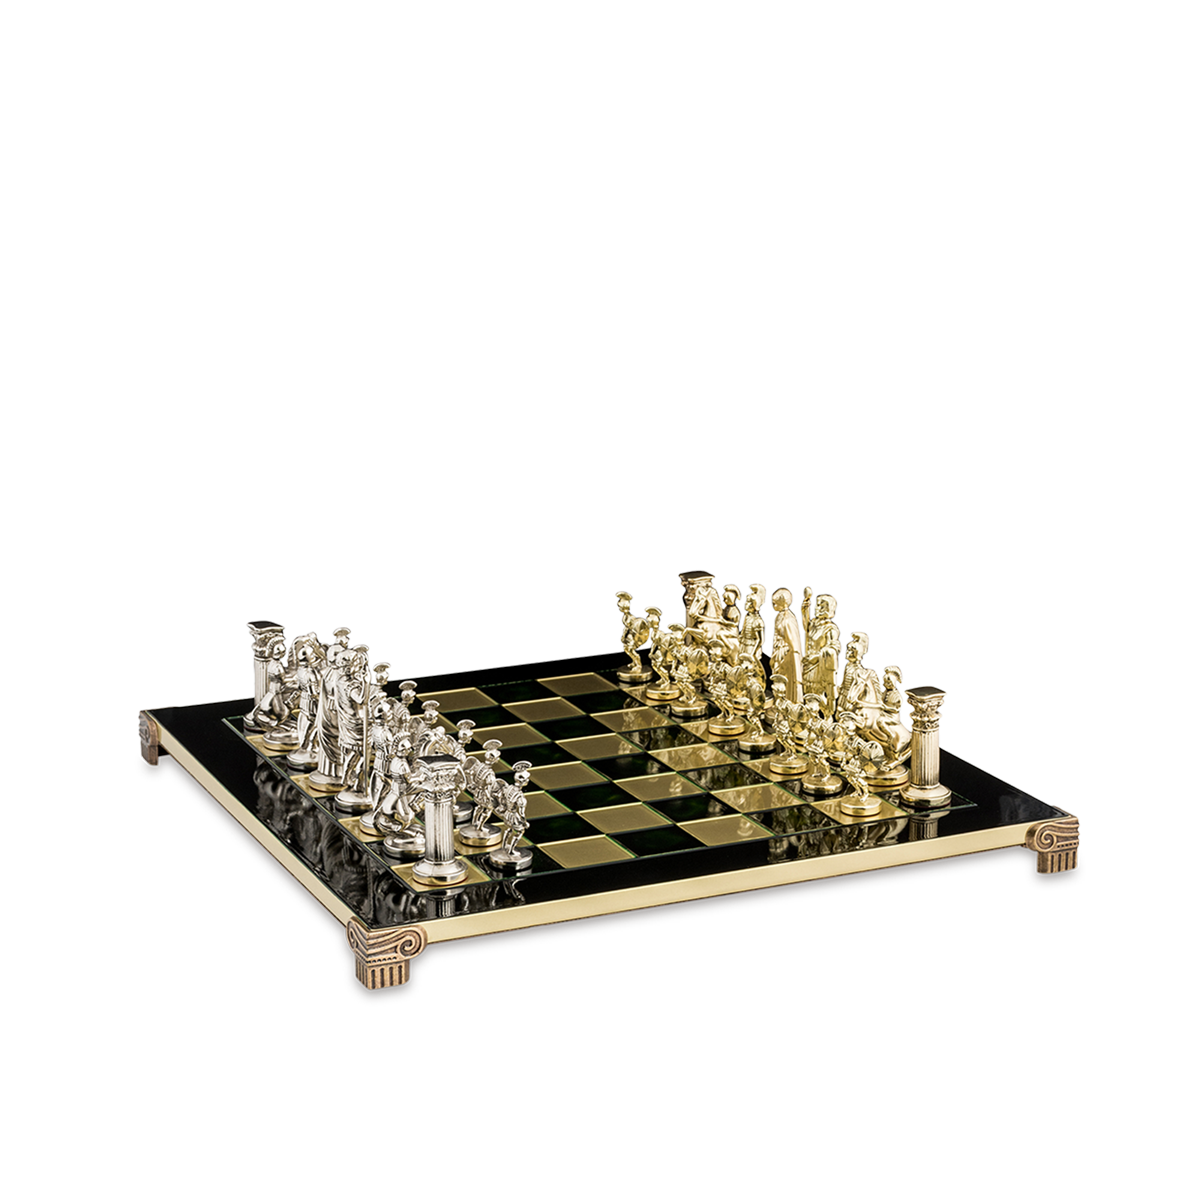 Greek Roman Period Chess Set